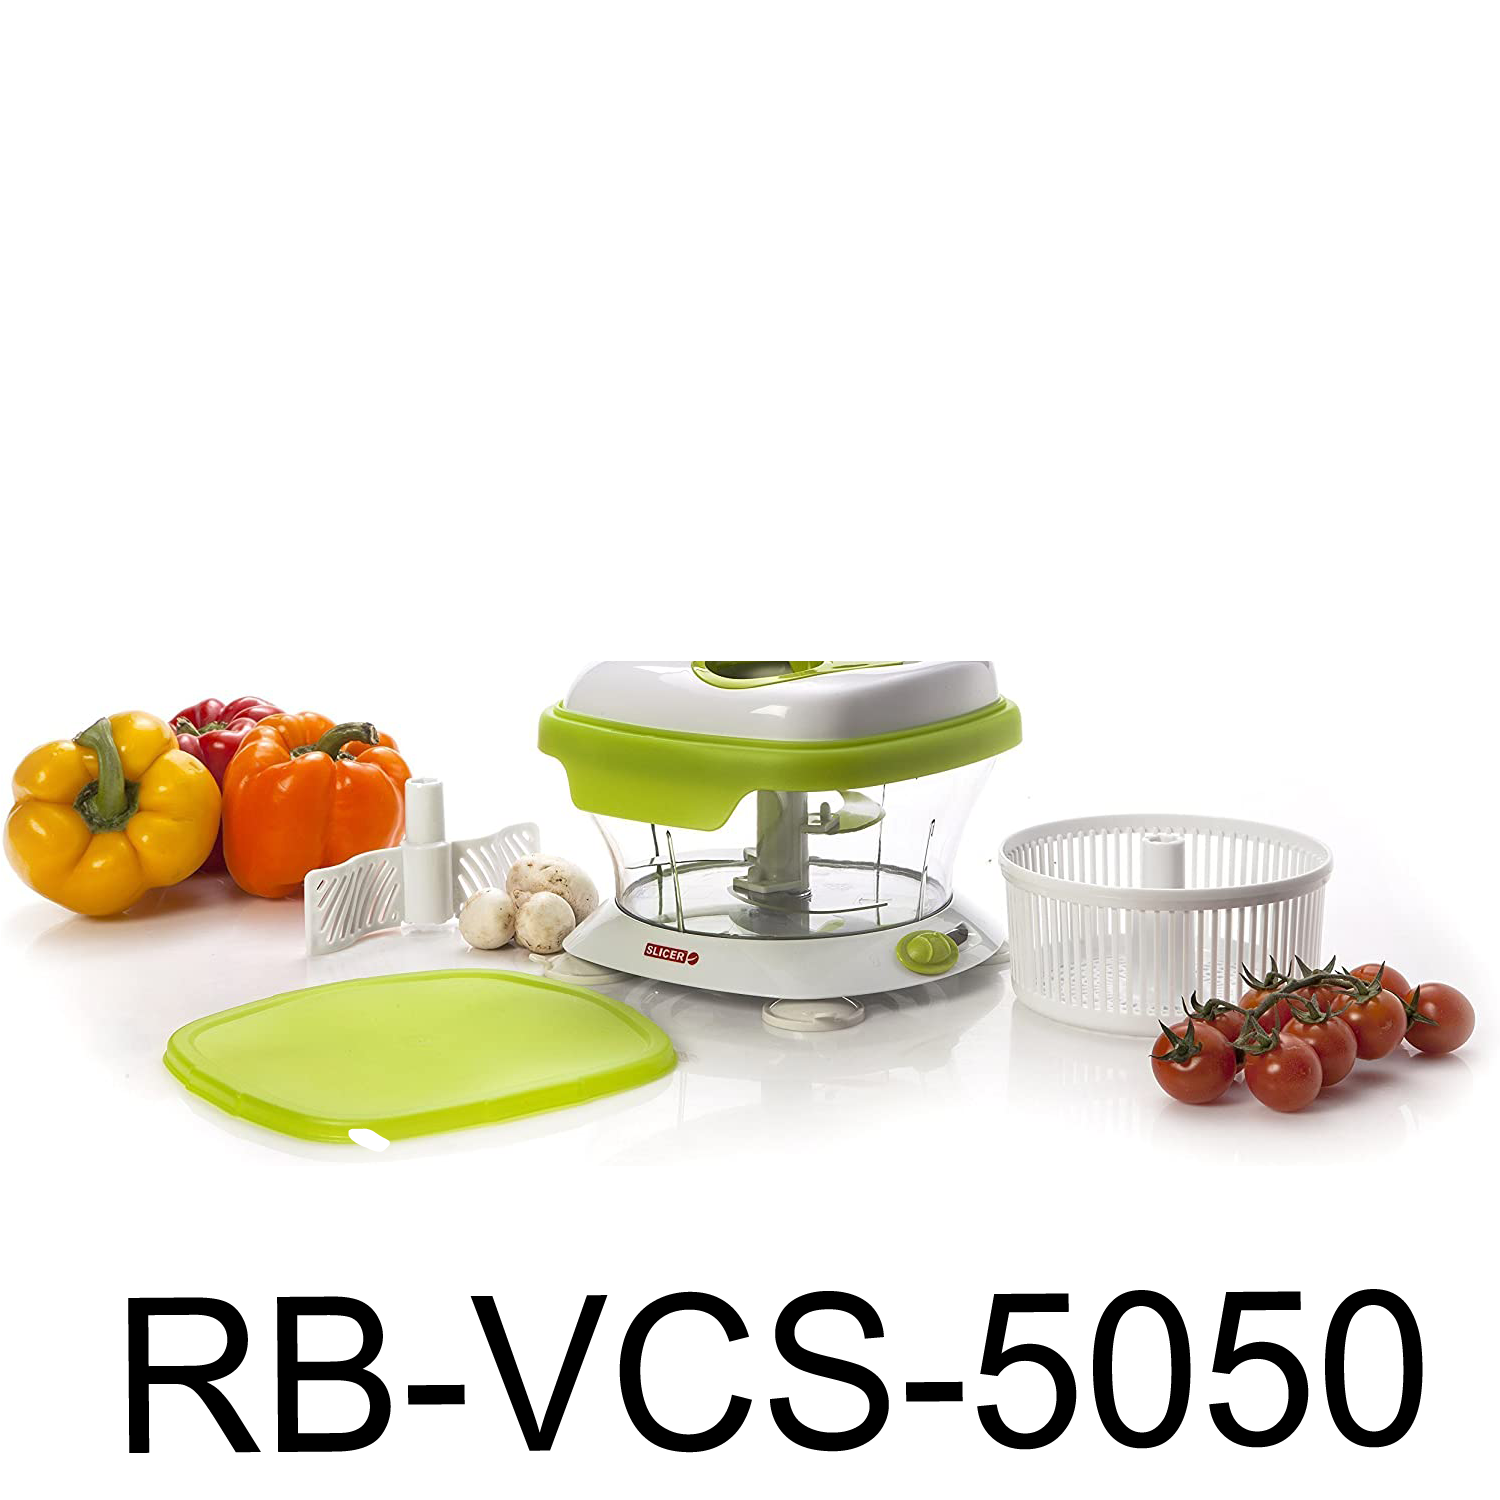 http://www.randbimport.com/cdn/shop/products/RB-VCS-5050.png?v=1658955528